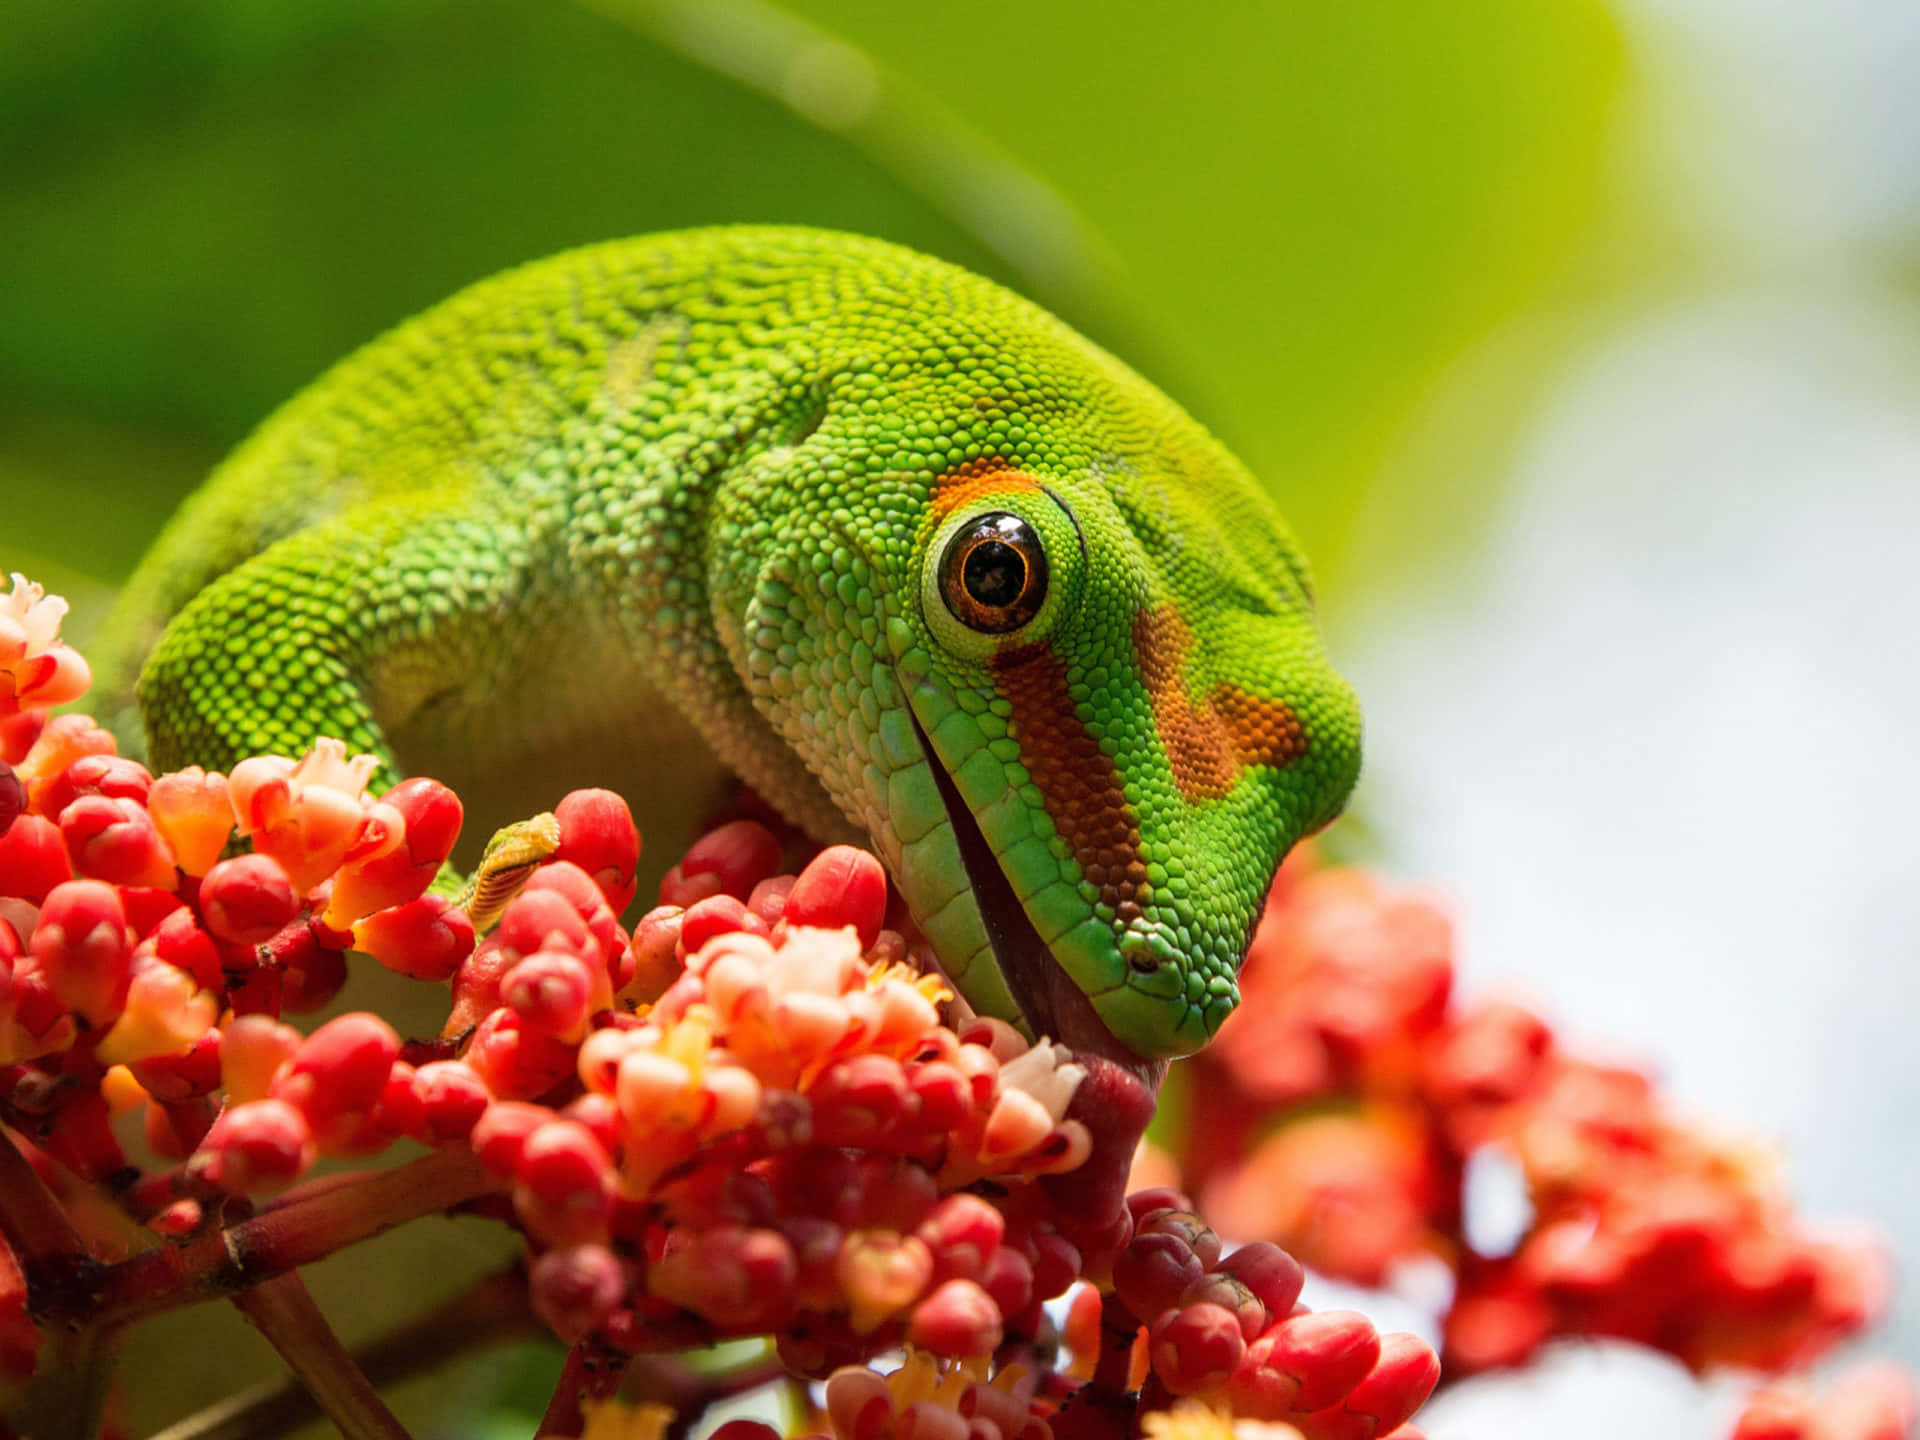 Imagende Un Lagarto Gecko Verde Comiendo